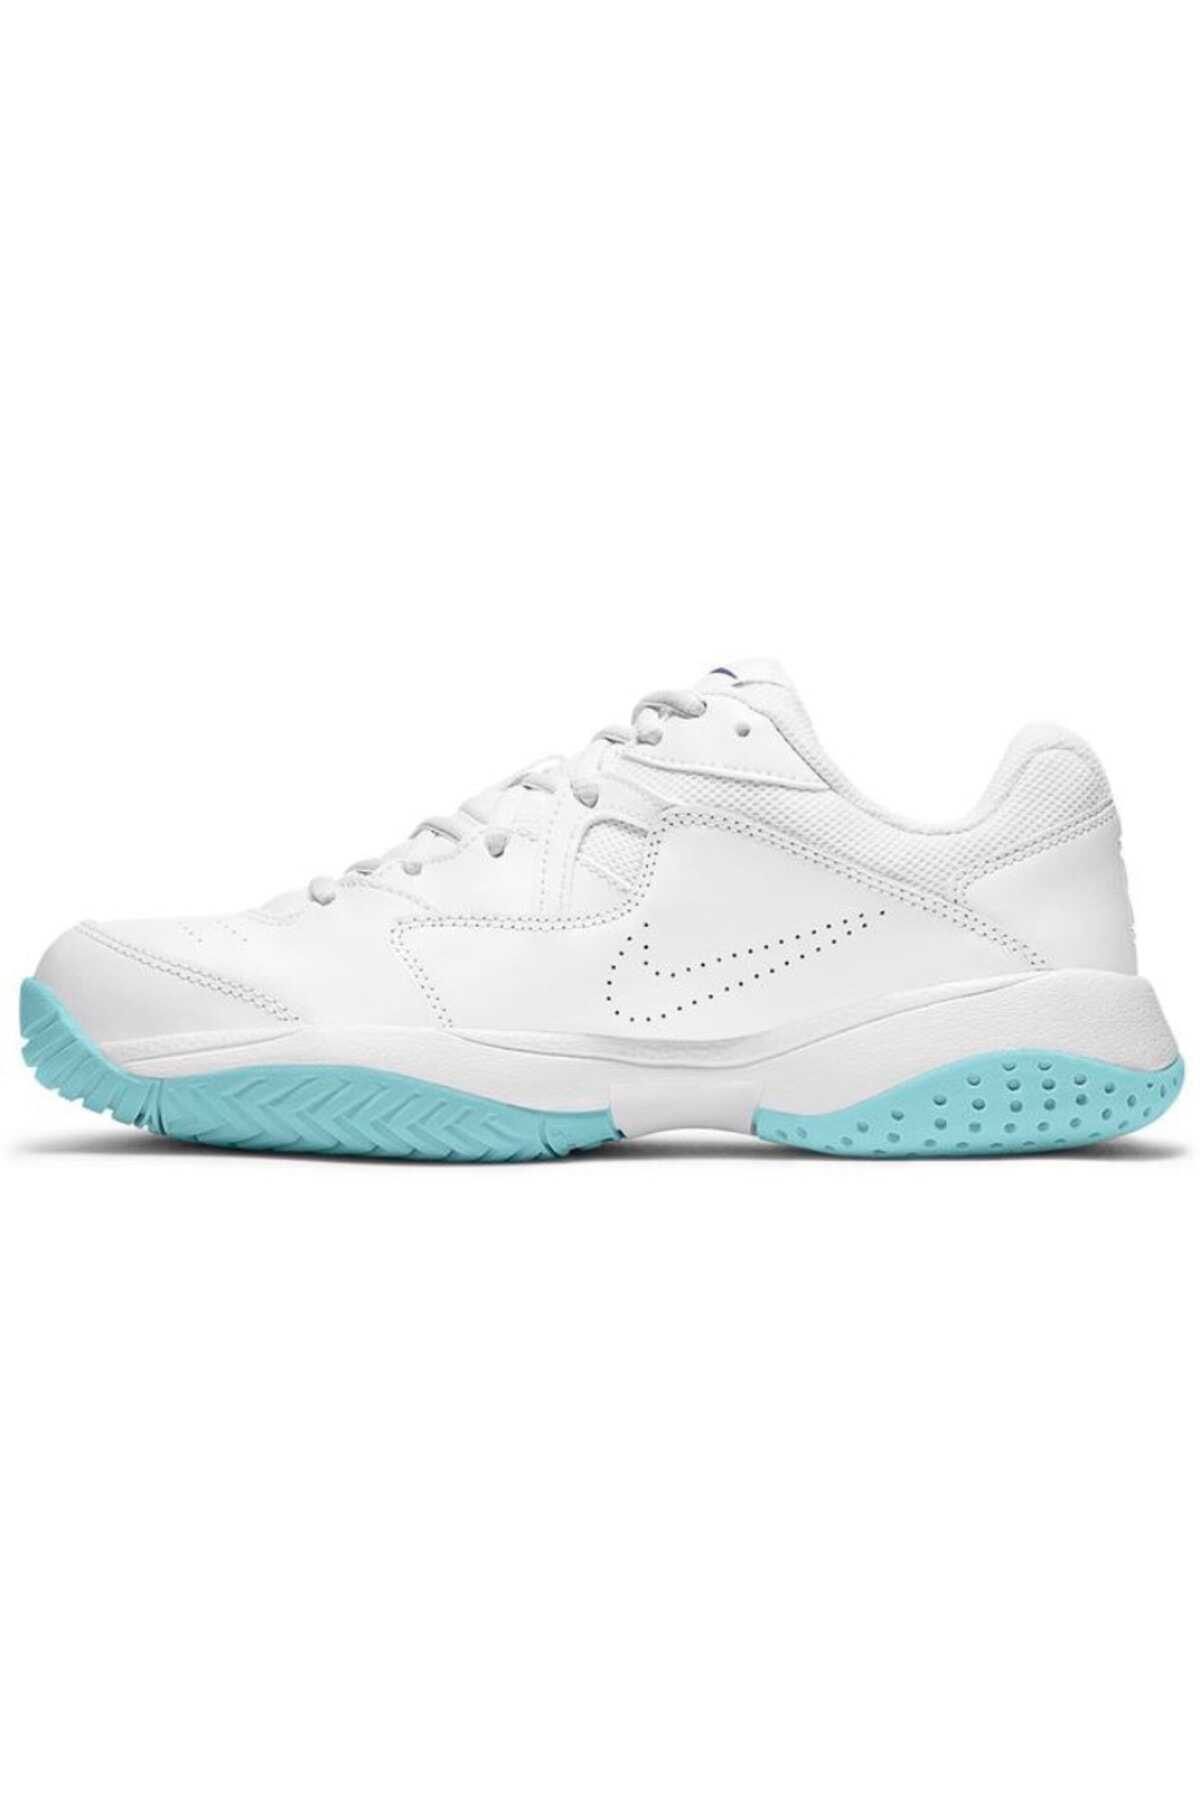 کفش تنیس زنانه مدل Court Lite 2 سفید برند Nike